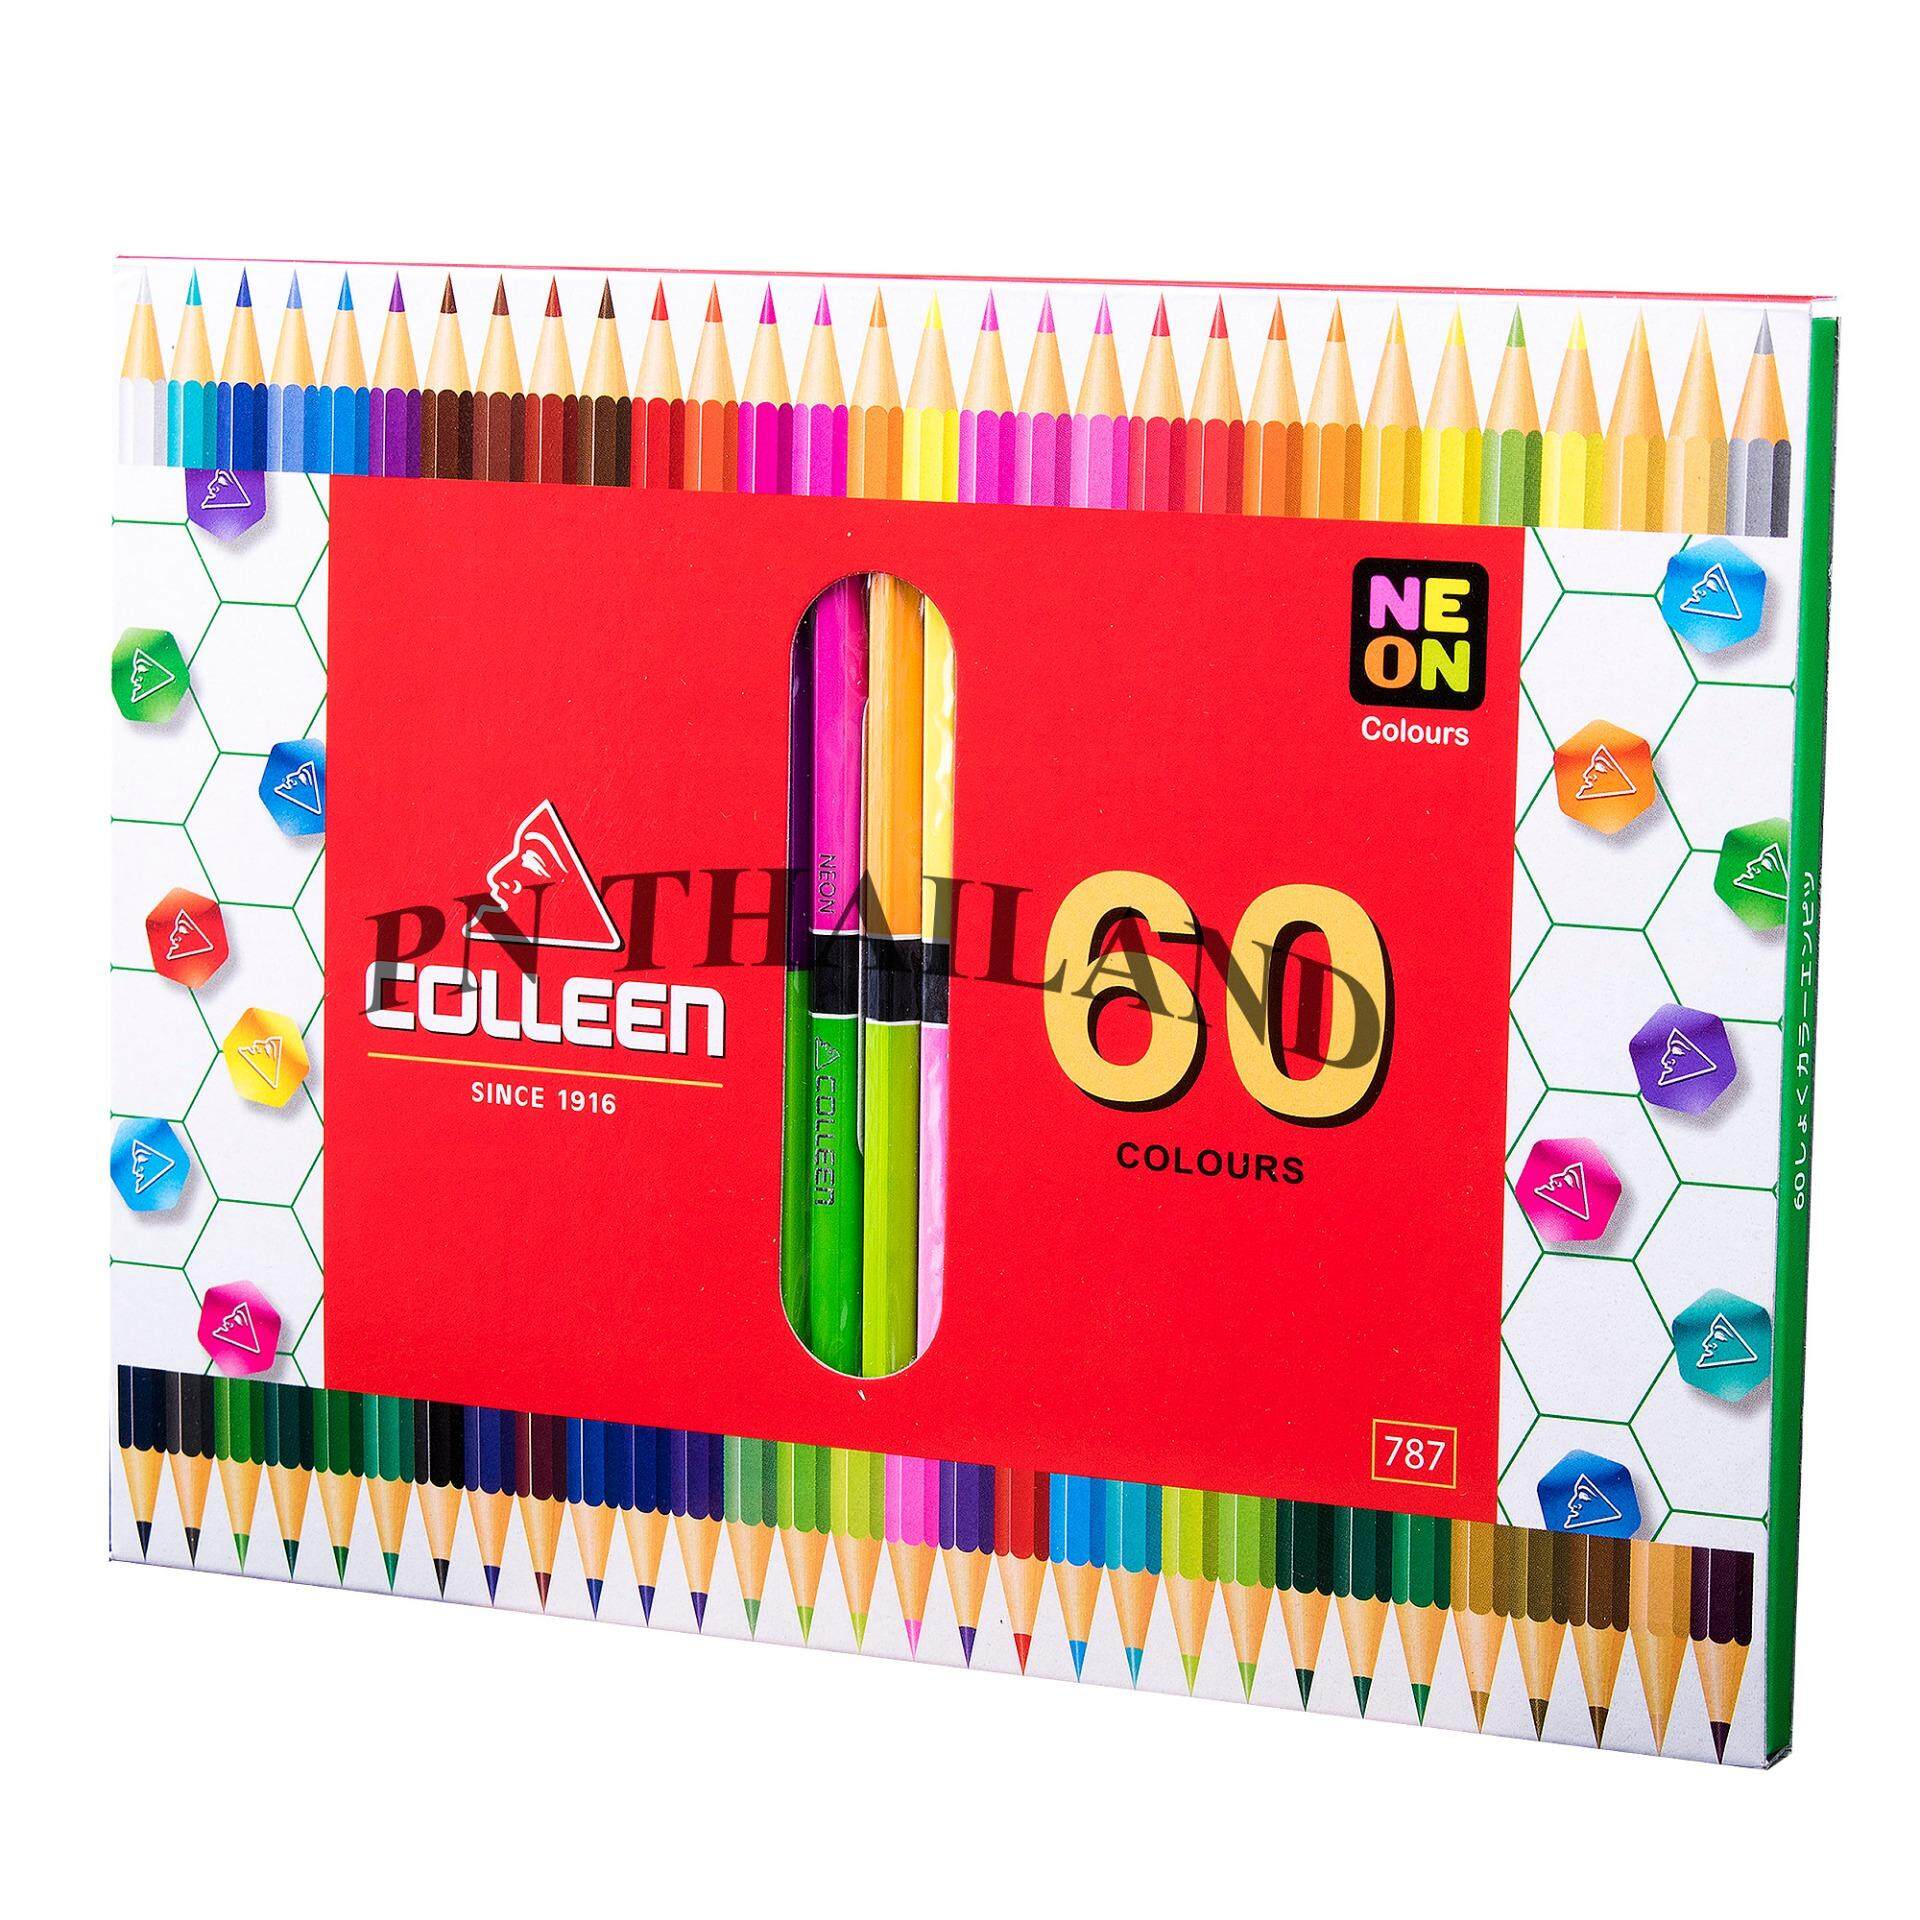 Colleen ดินสอสีไม้ คอลลีน 2 หัว 30แท่ง 60 สี รุ่น787 สีธรรมดา+นีออน